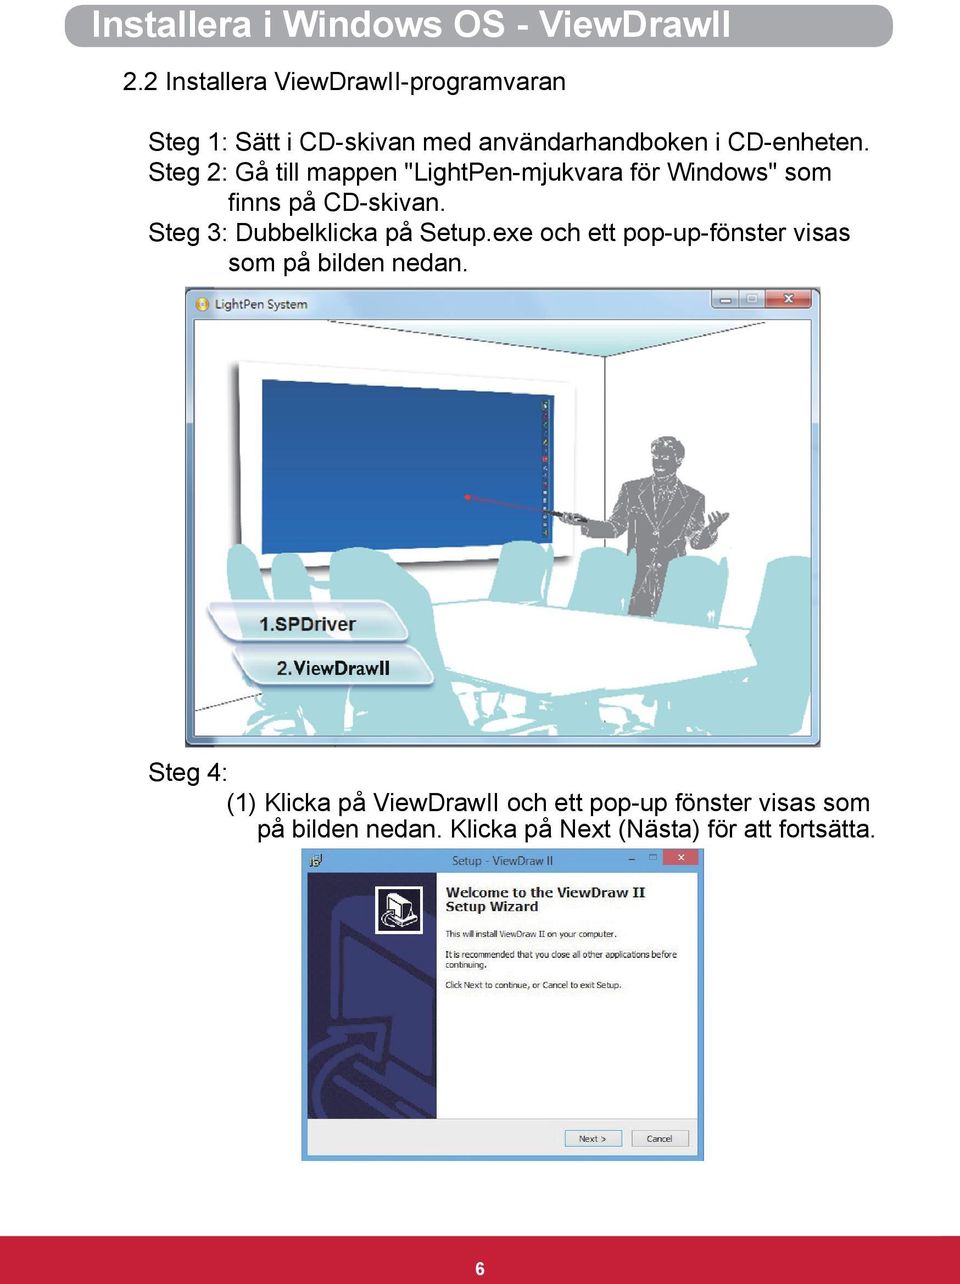 Steg 2: Gå till mappen "LightPen-mjukvara för Windows" som finns på CD-skivan.